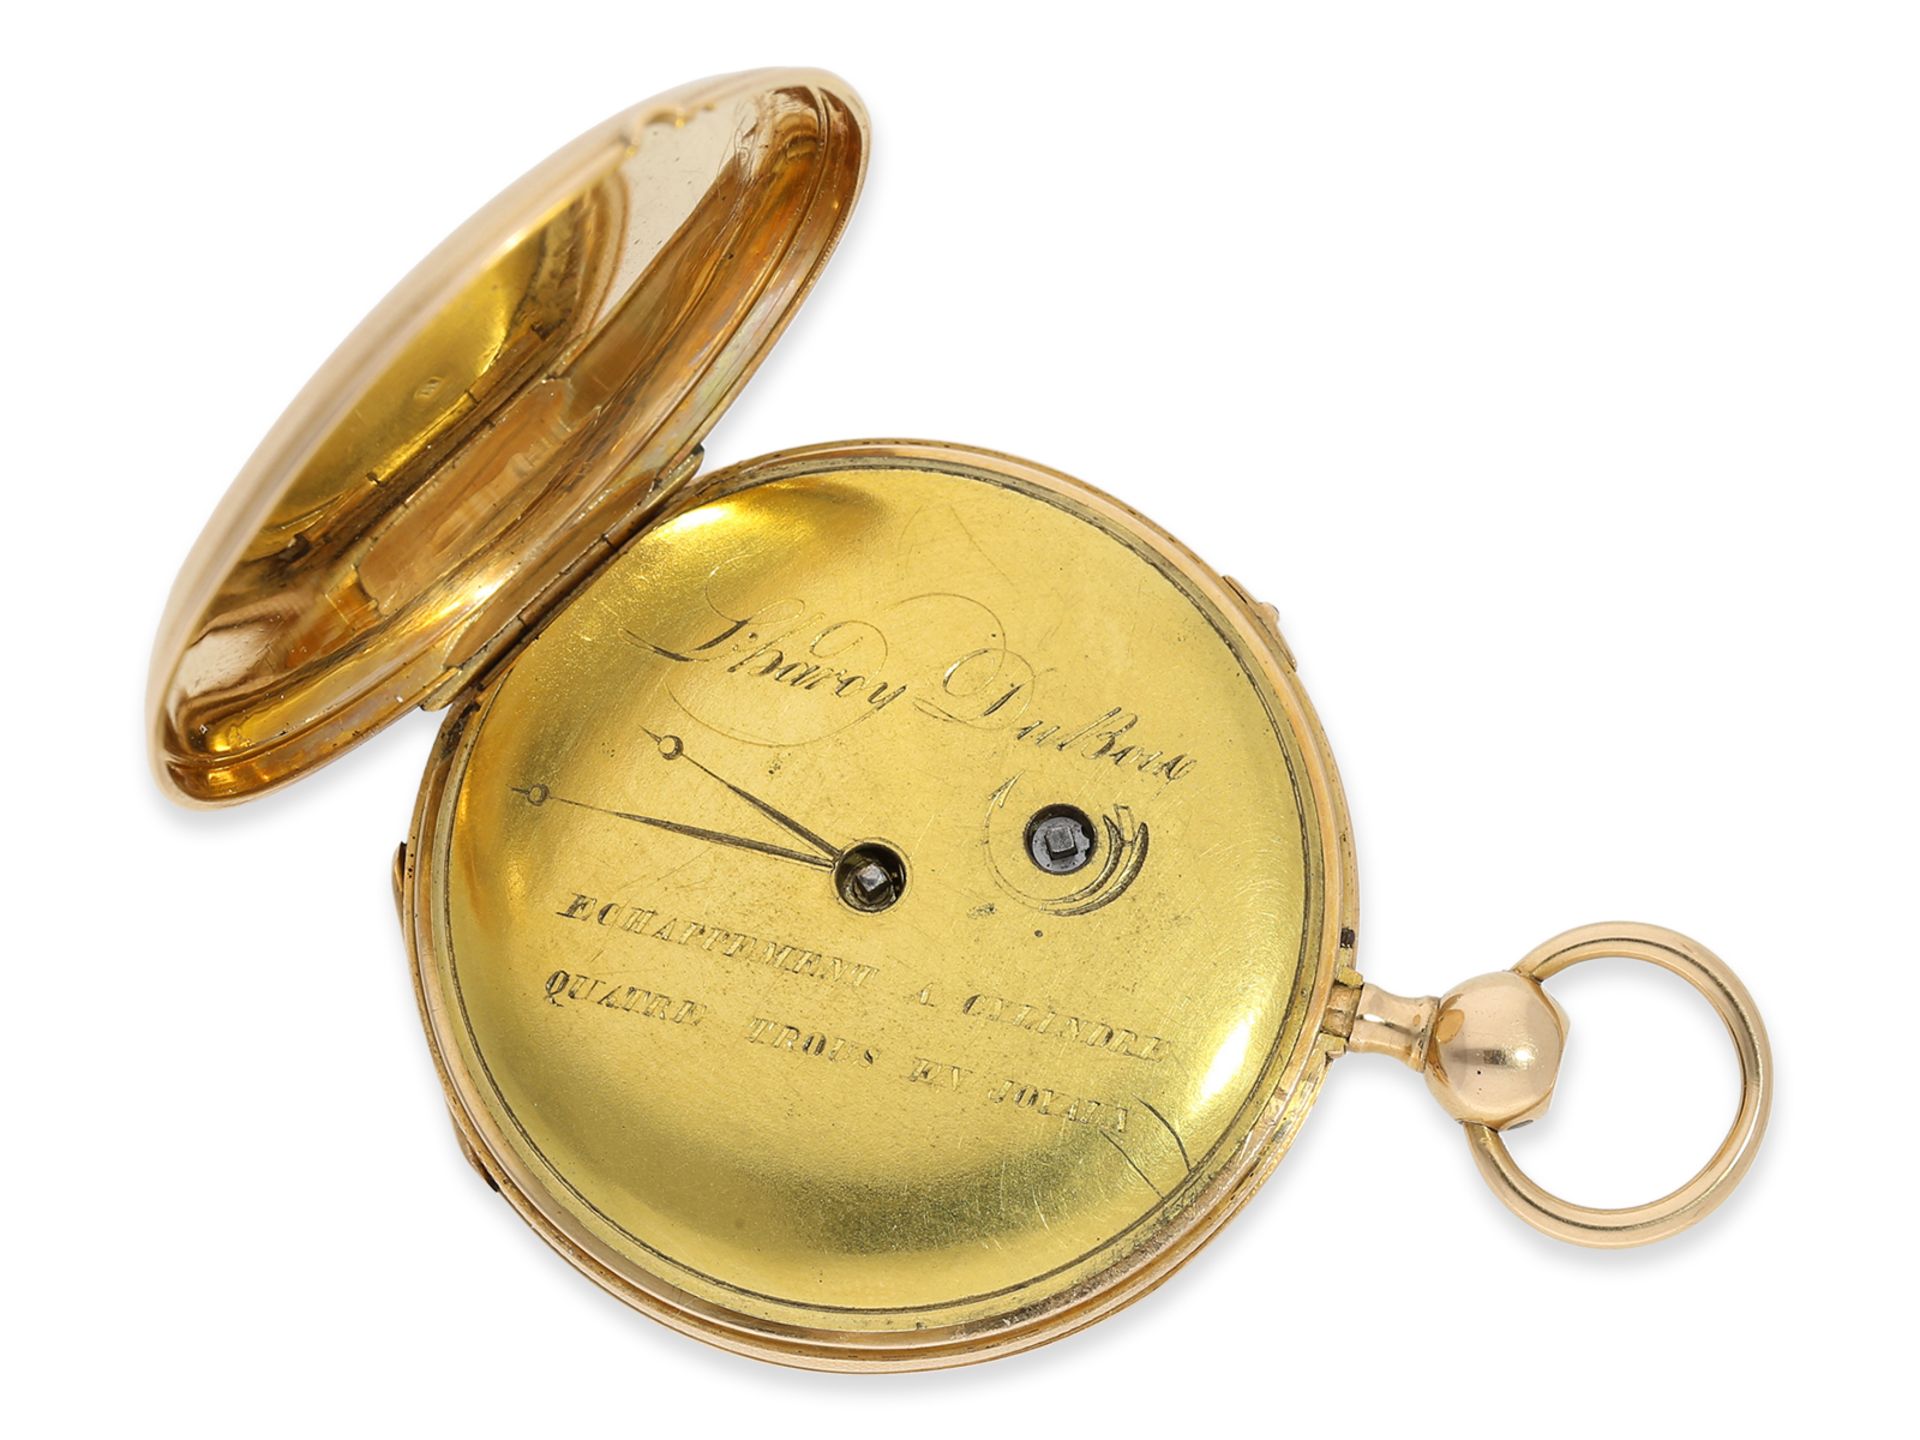 Taschenuhr: feine Zylinderuhr mit Repetition, L'Hardy Dubois, ca.1820 - Bild 3 aus 6